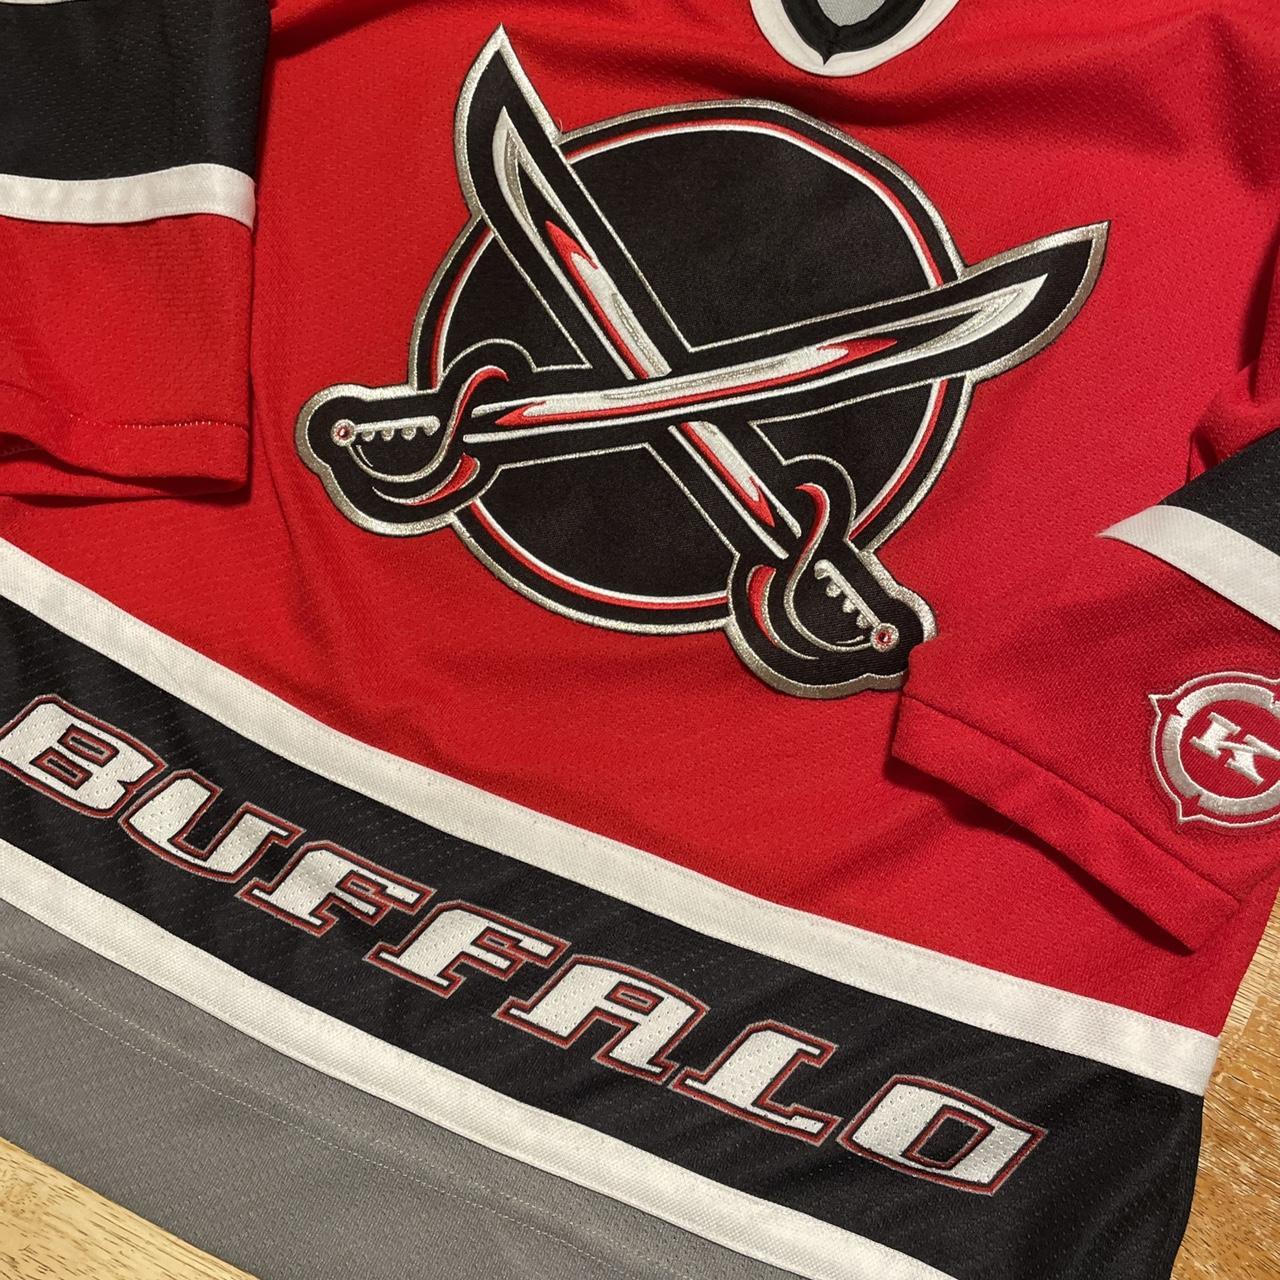 NHL Vintage KOHO Buffalo Sabres Jersey Black Red Men's Adult Size